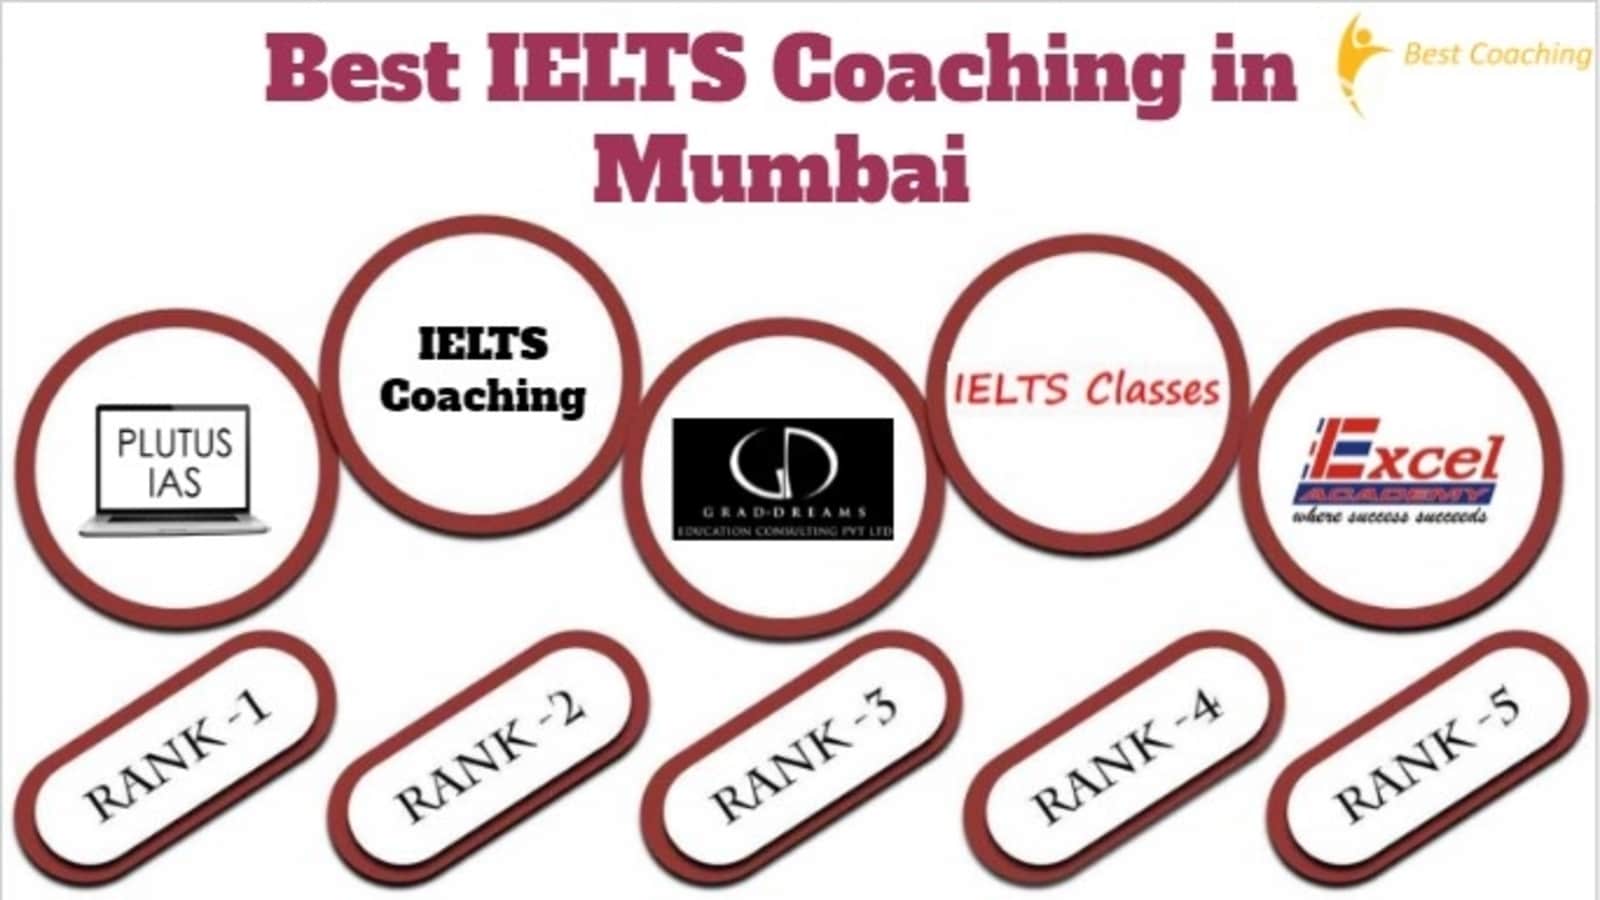 Best IELTS Coaching in Mumbai